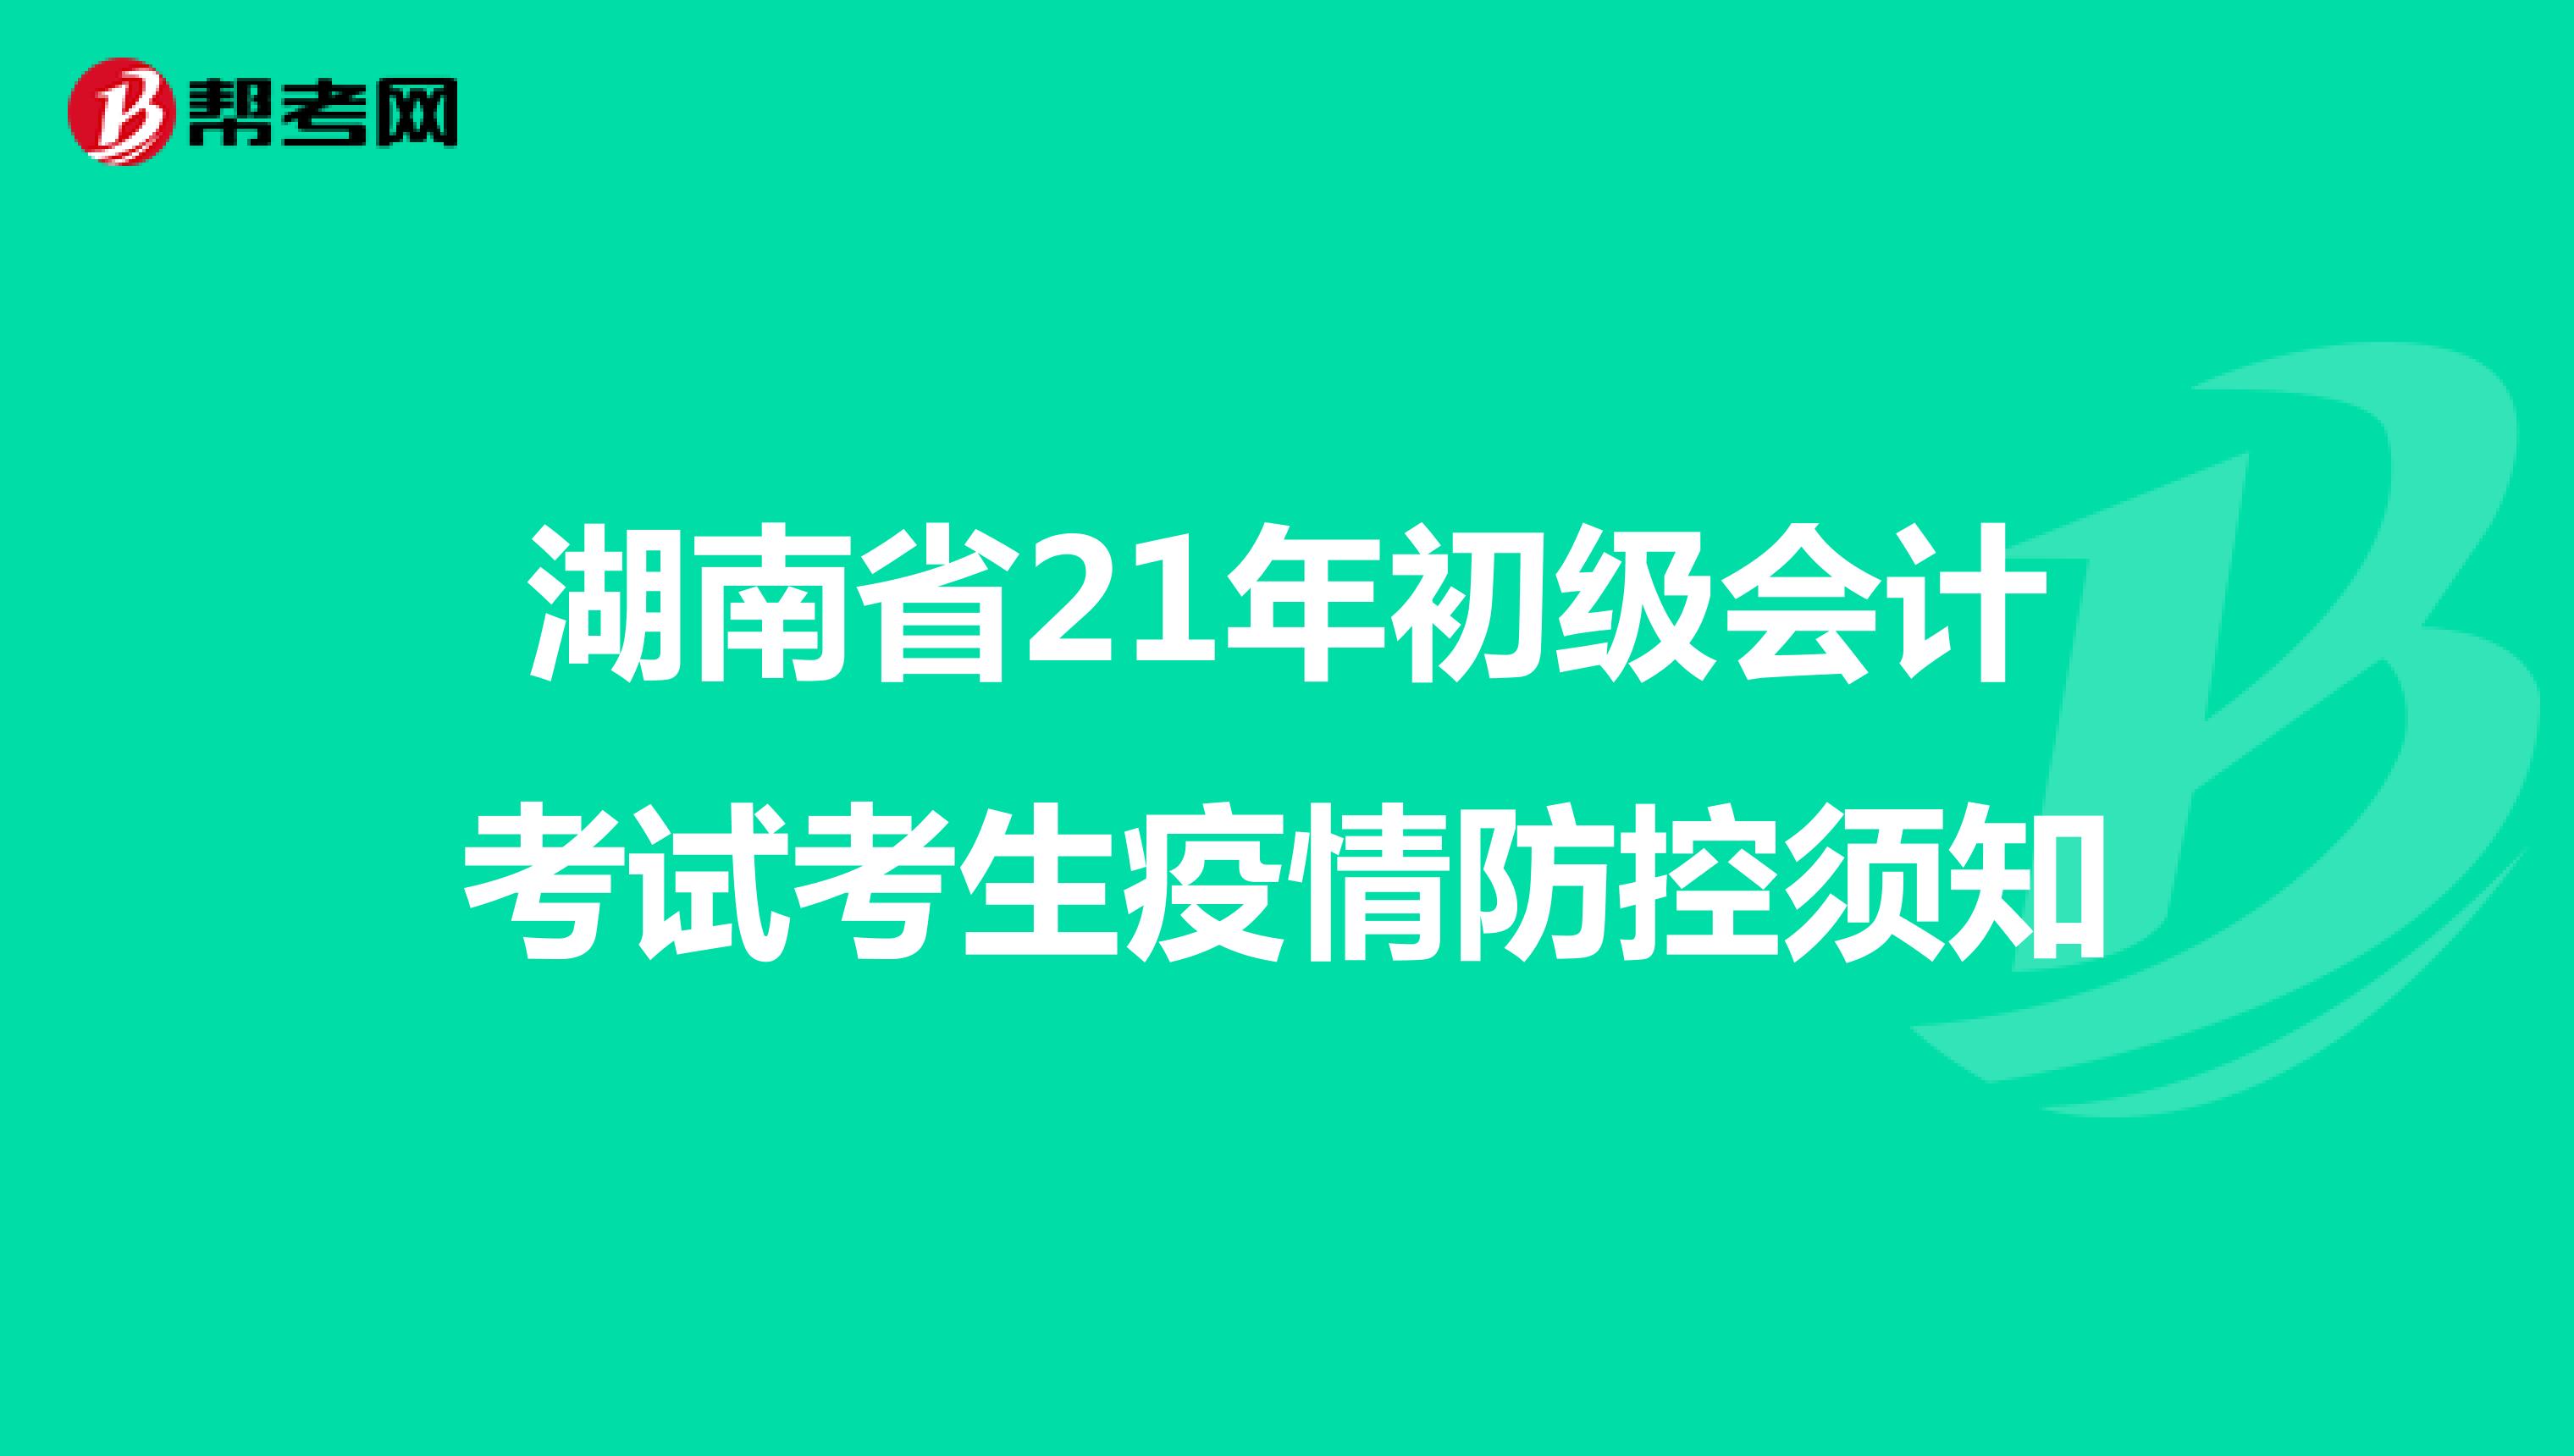 湖南省21年初级会计考试考生疫情防控须知